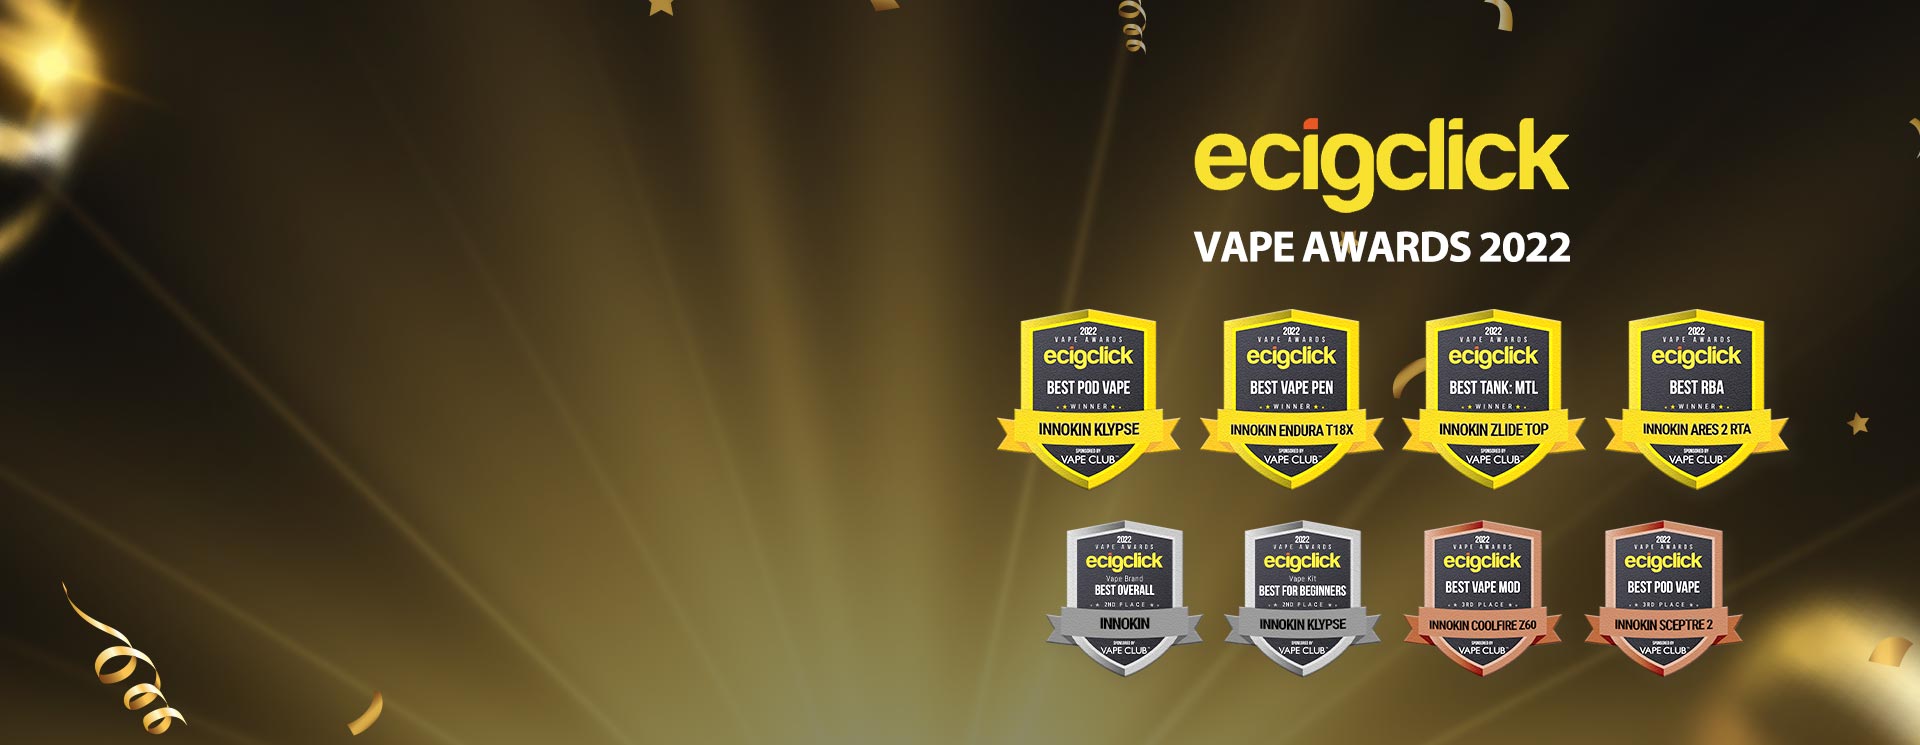 Ecigclick Awards 2022